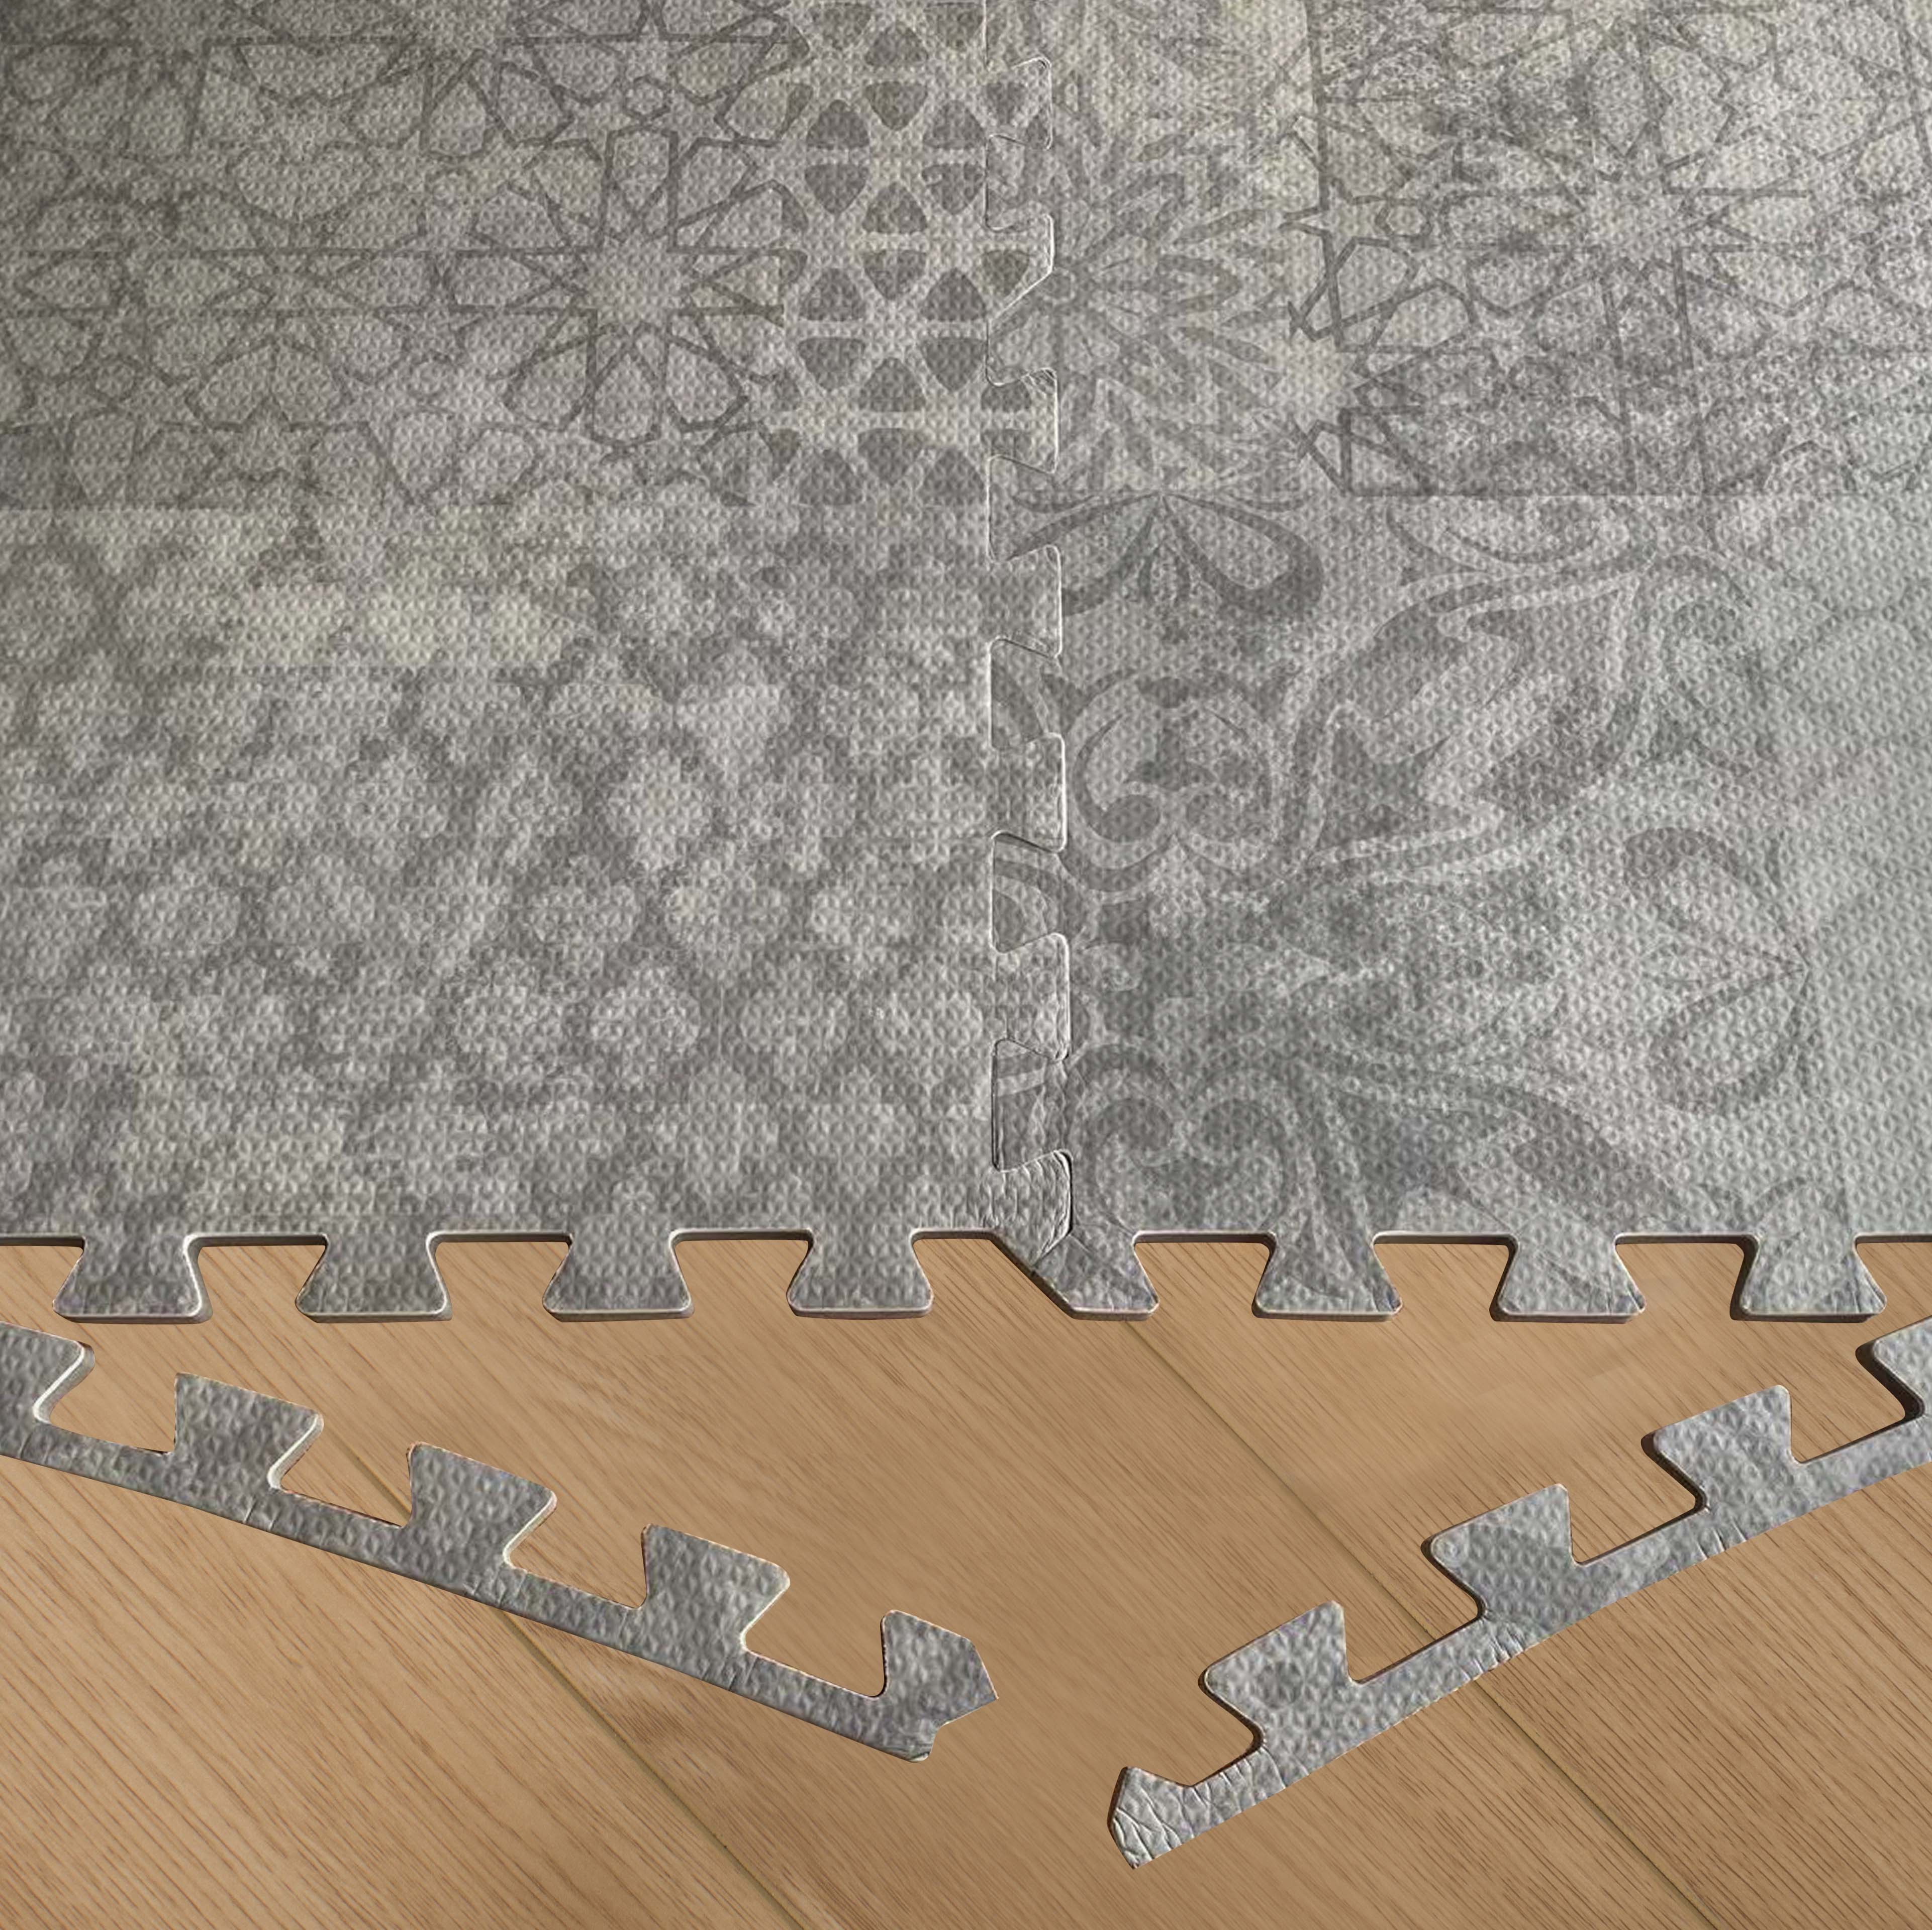 Tuiles de tapis de jeu de puzzle marocain